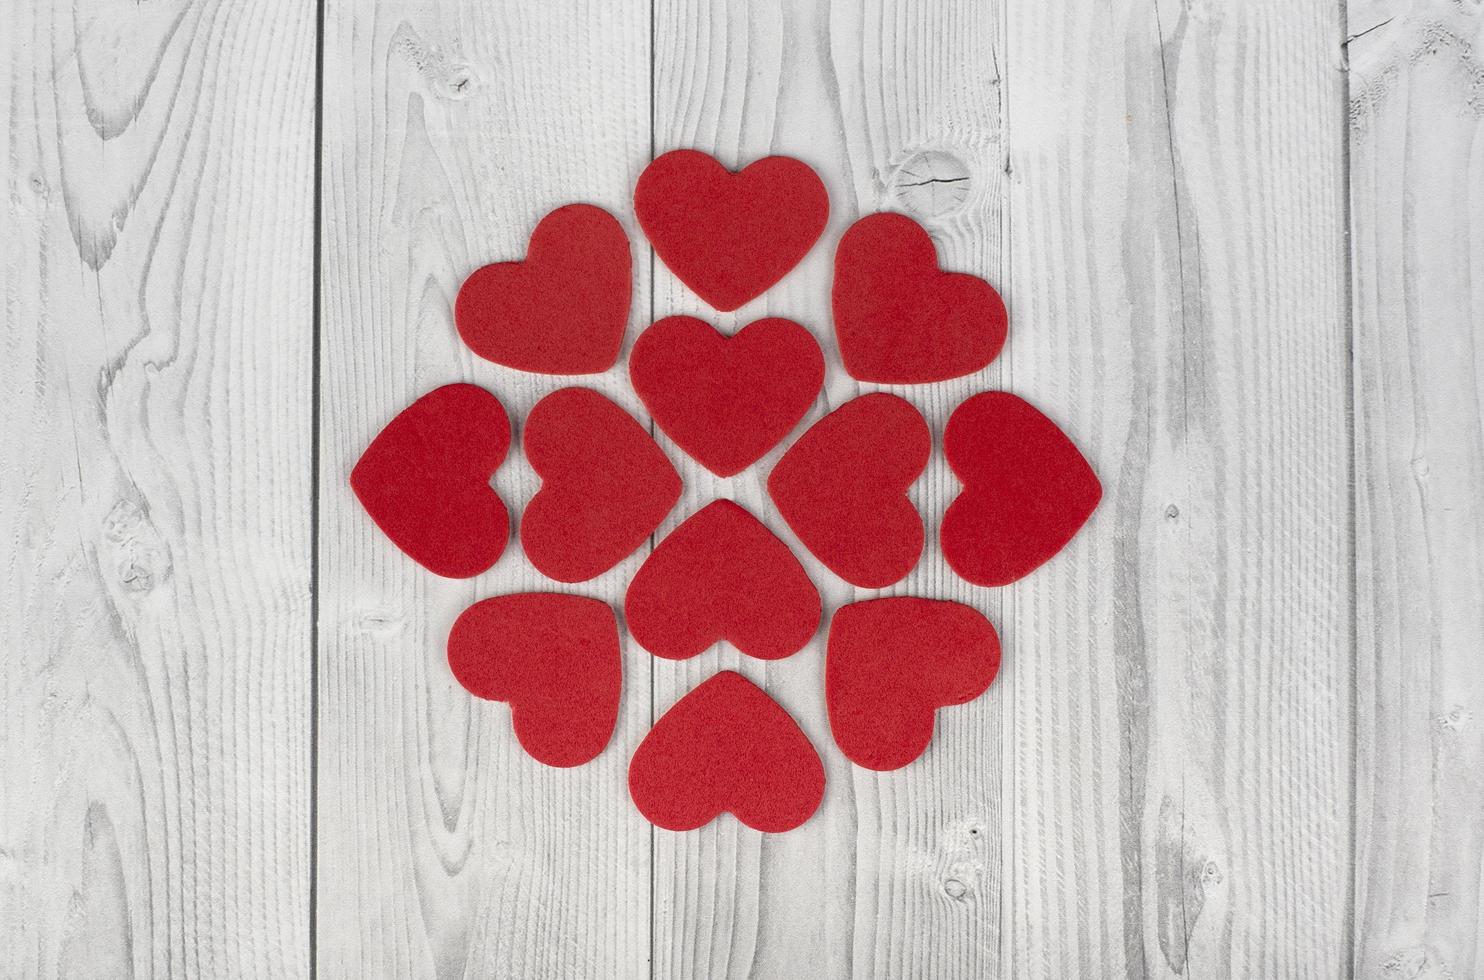 röda hjärtan som bildar en geometrisk figur i mitten av en vit och grå träbakgrund. begreppet alla hjärtans dag foto